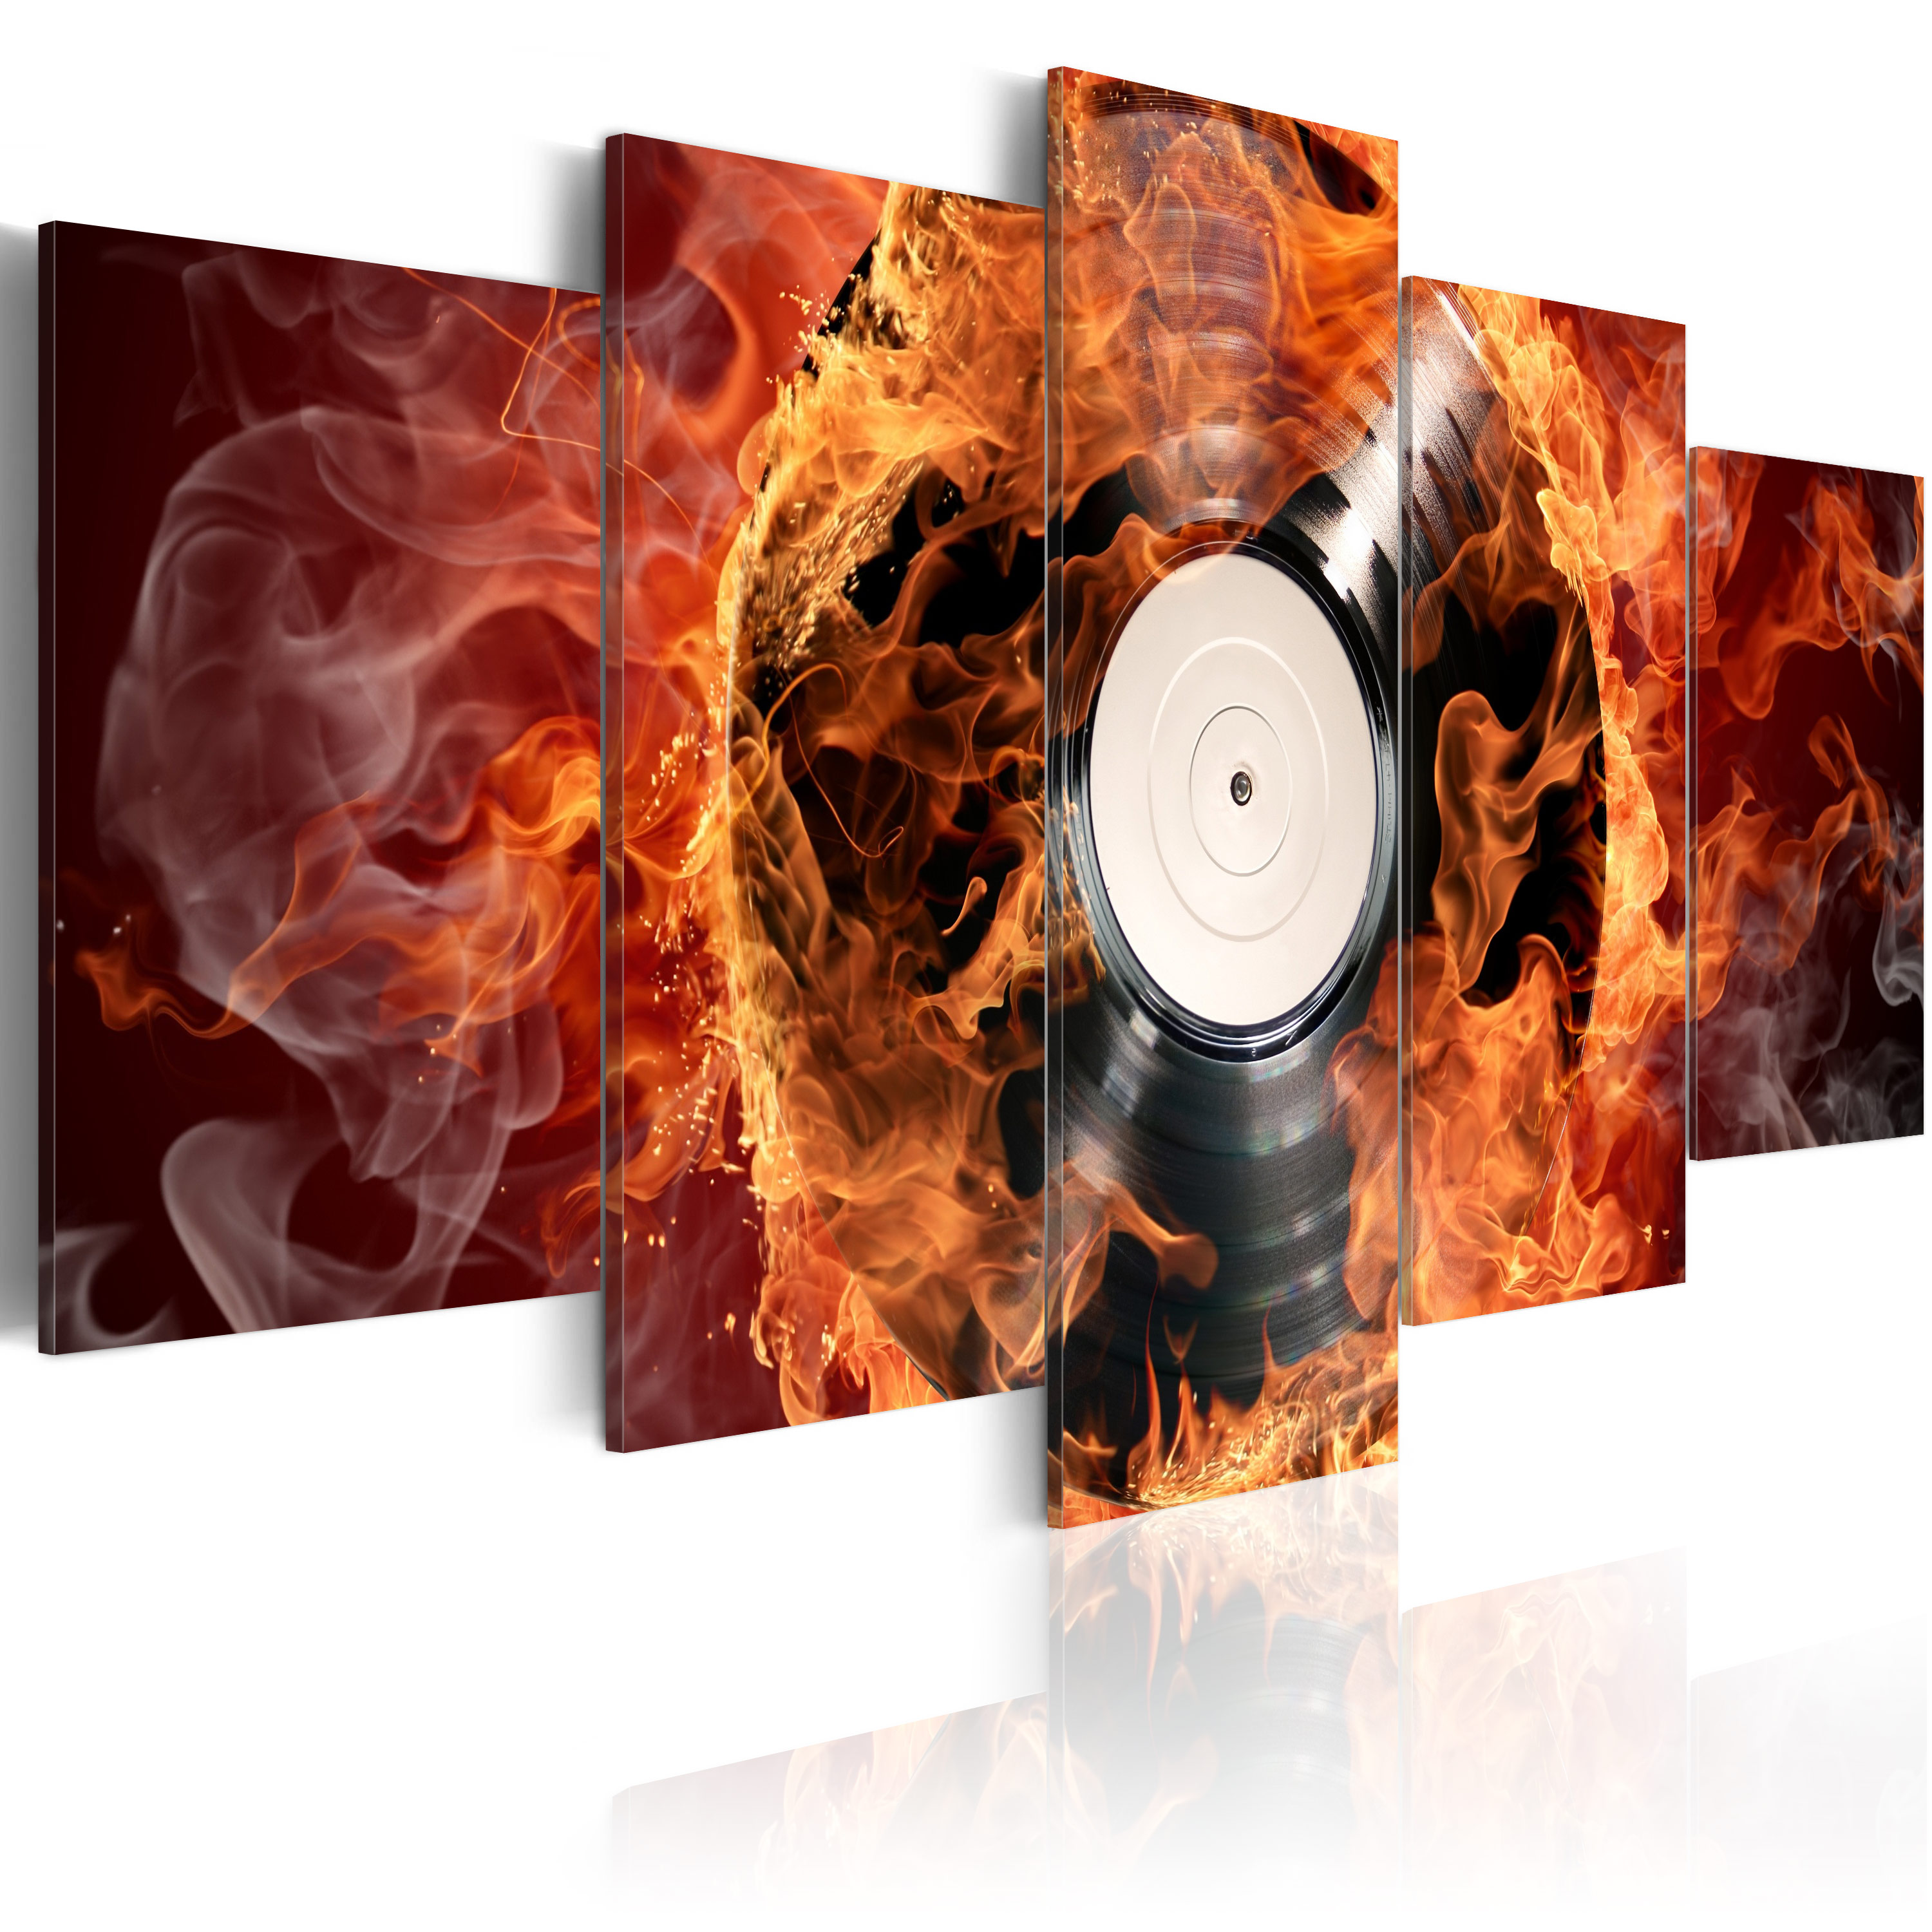 ARTGEIST Vinyl on fire - Billede af vinylplade med ild-effekt trykt på lærred - Flere størrelser 100x50